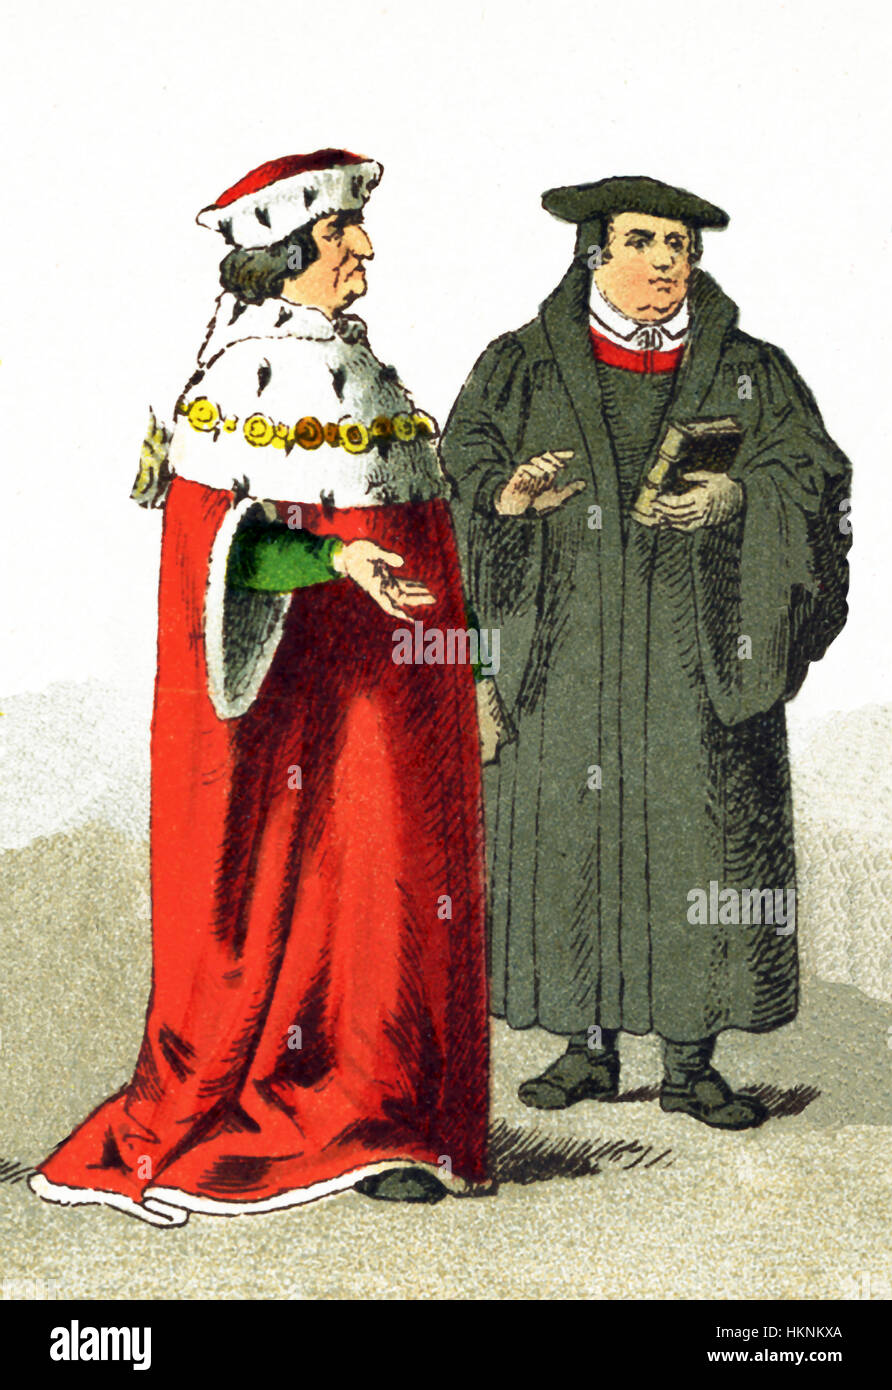 Le figure rappresentate qui sono un elettore e Martin Luther. Entrambi sono tedeschi risalente al cinquecento. Martin Lutero (1483-1746) era il leader della Riforma Protestante. Il titolo 'elettore" era il titolo dato un principe tedesco ha il diritto di partecipare alla elezione del Sacro Romano Imperatore. L'illustrazione risale al 1882. Foto Stock